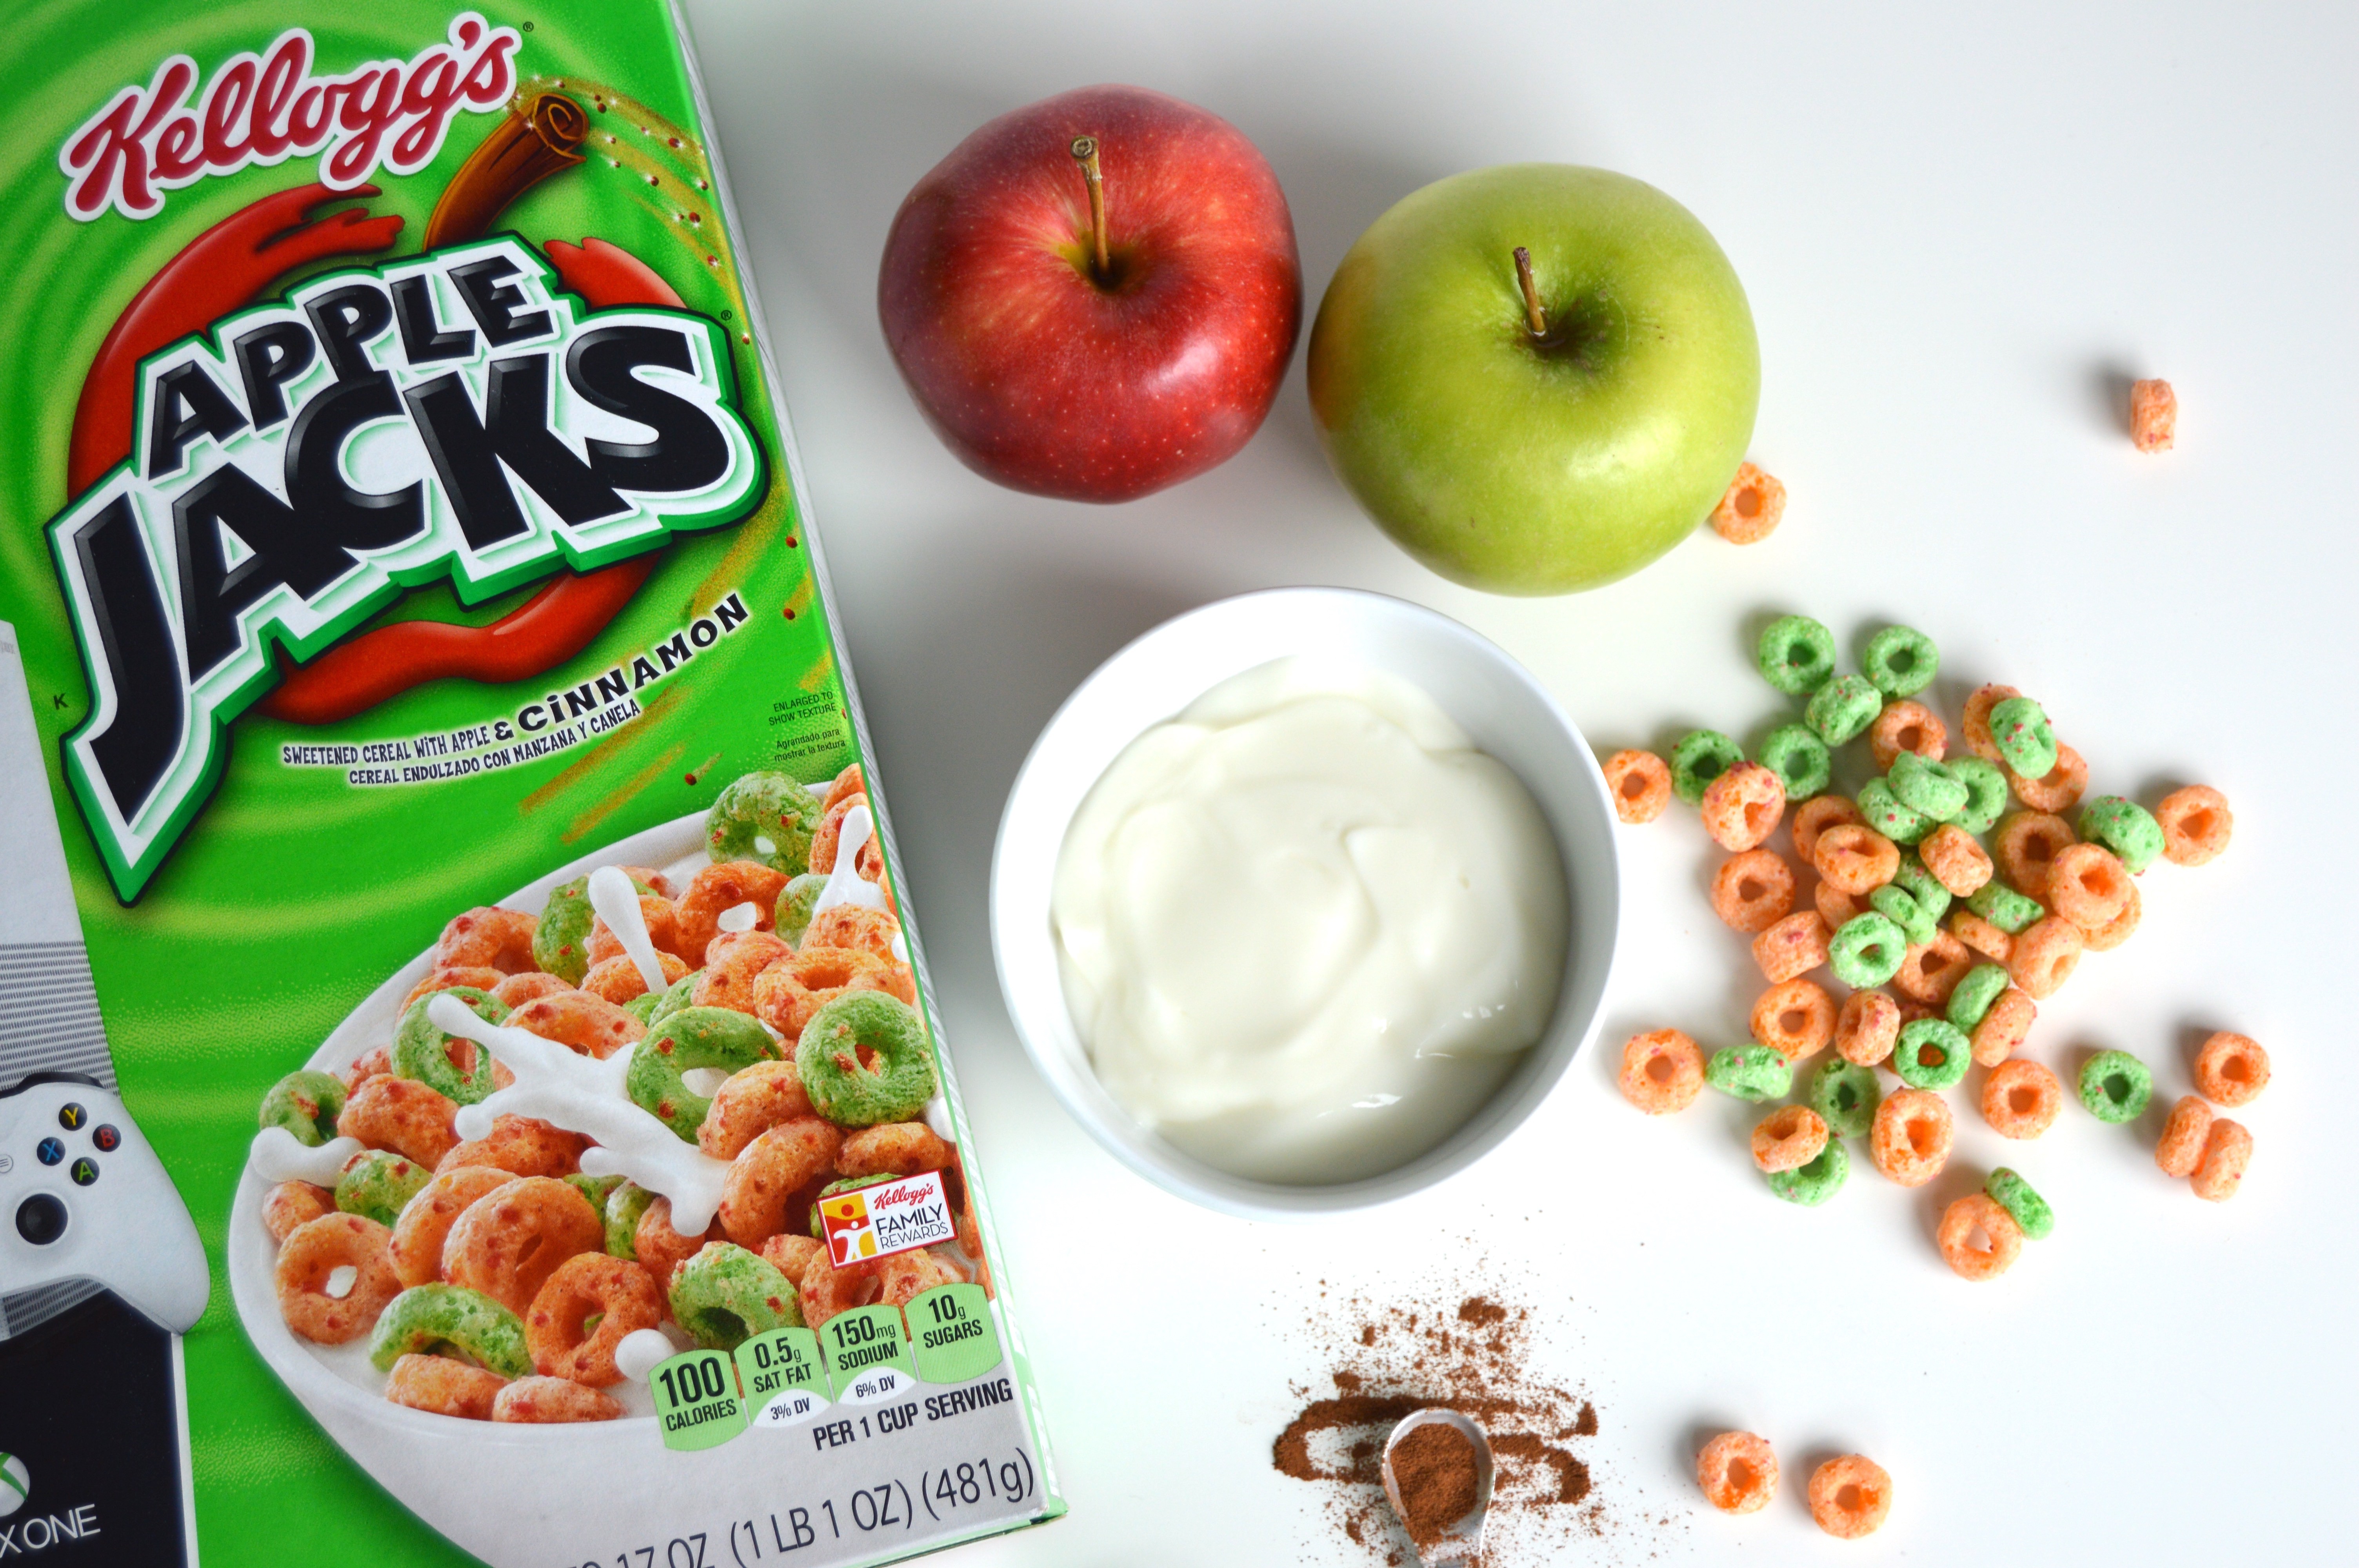 Apple Jacks Cereal Yogurt Parfait ingredients: Apple Jacks, vanilla yogurt, apples, and a sprinkle of cinnamon